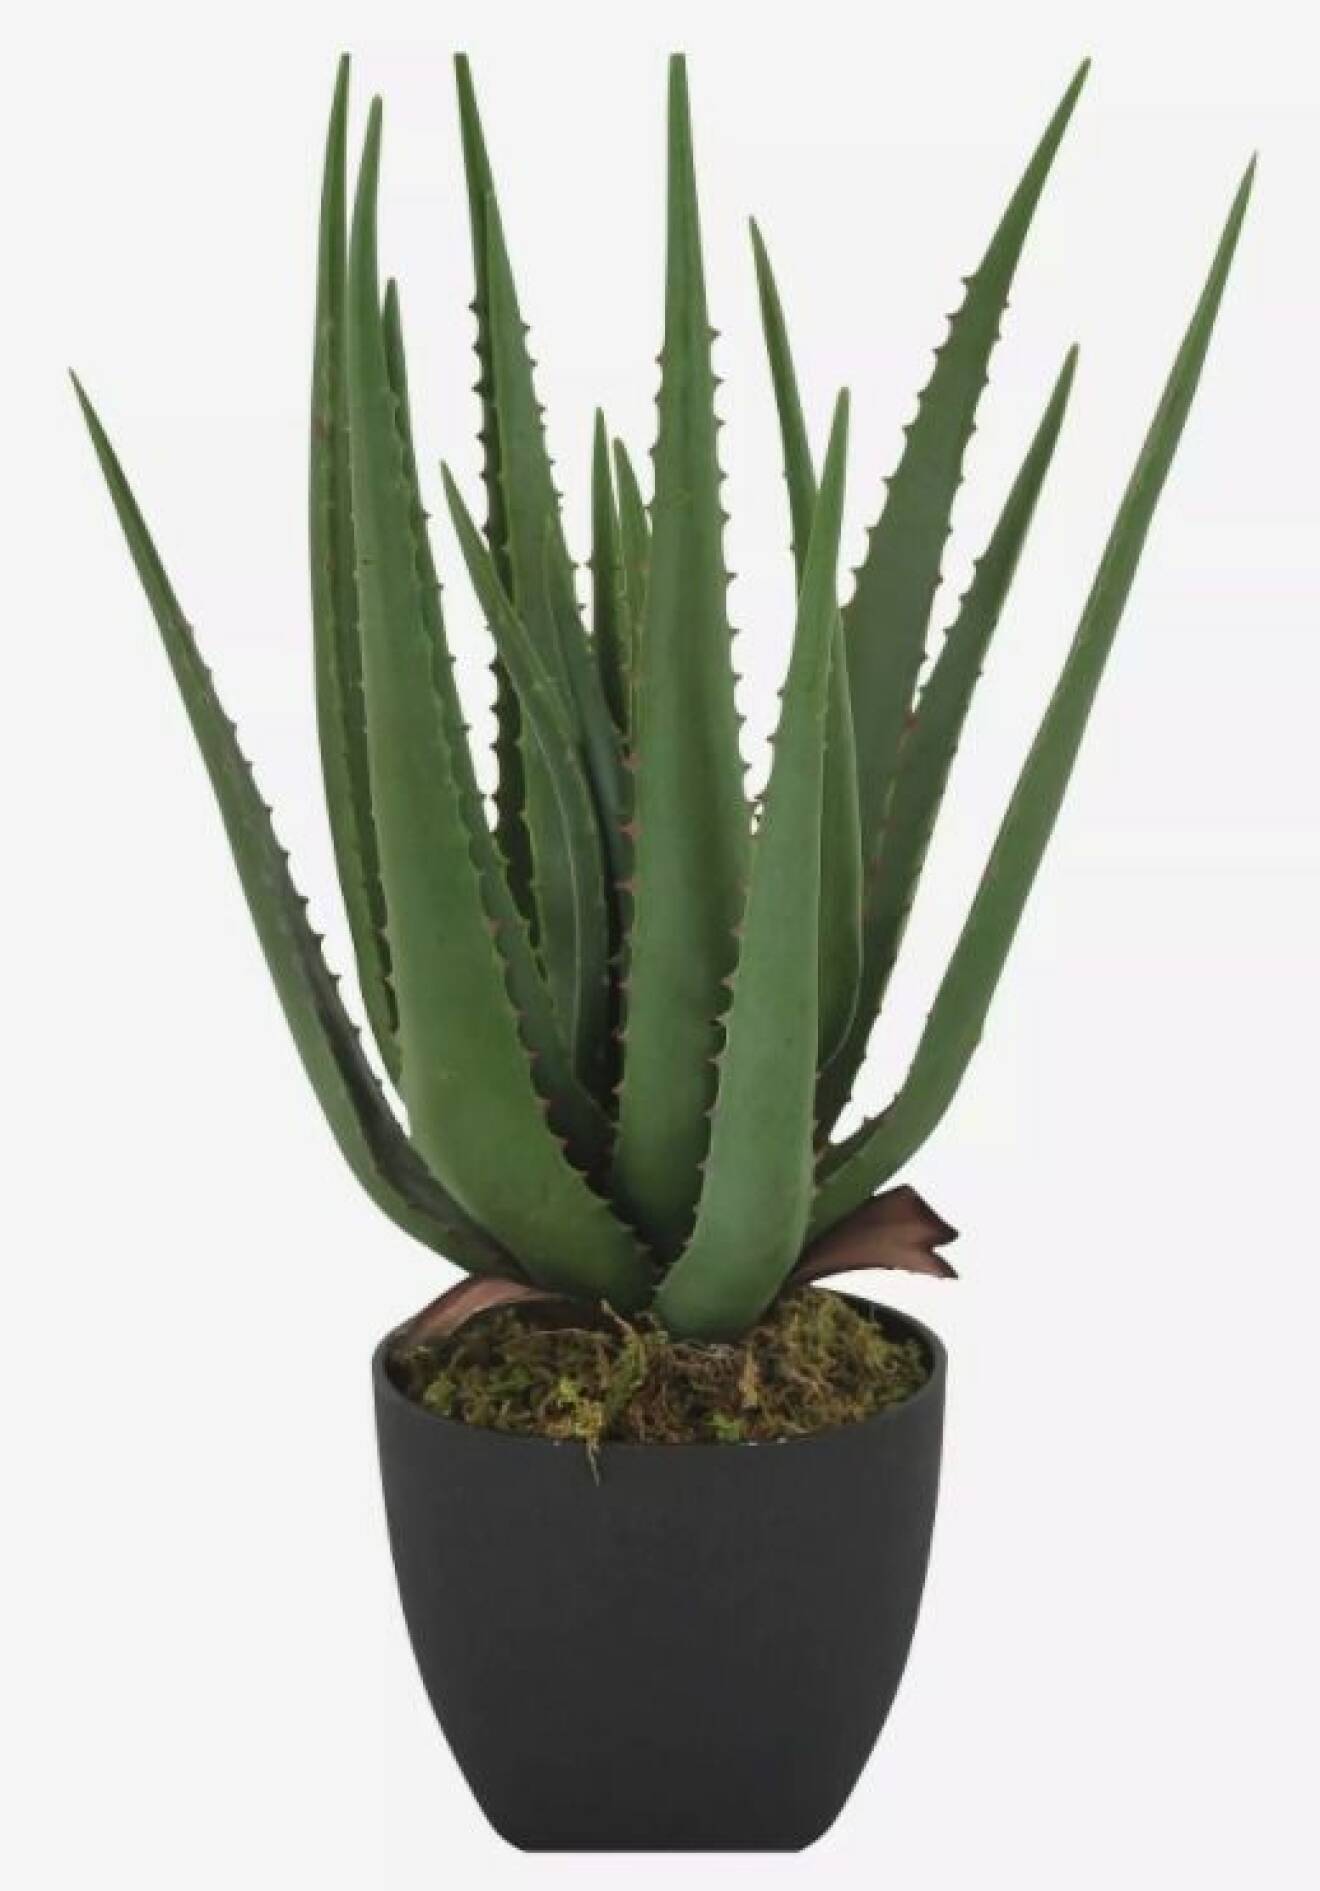 Krukväxt Aloe Vera med tjocka högt växande blad med taggar.